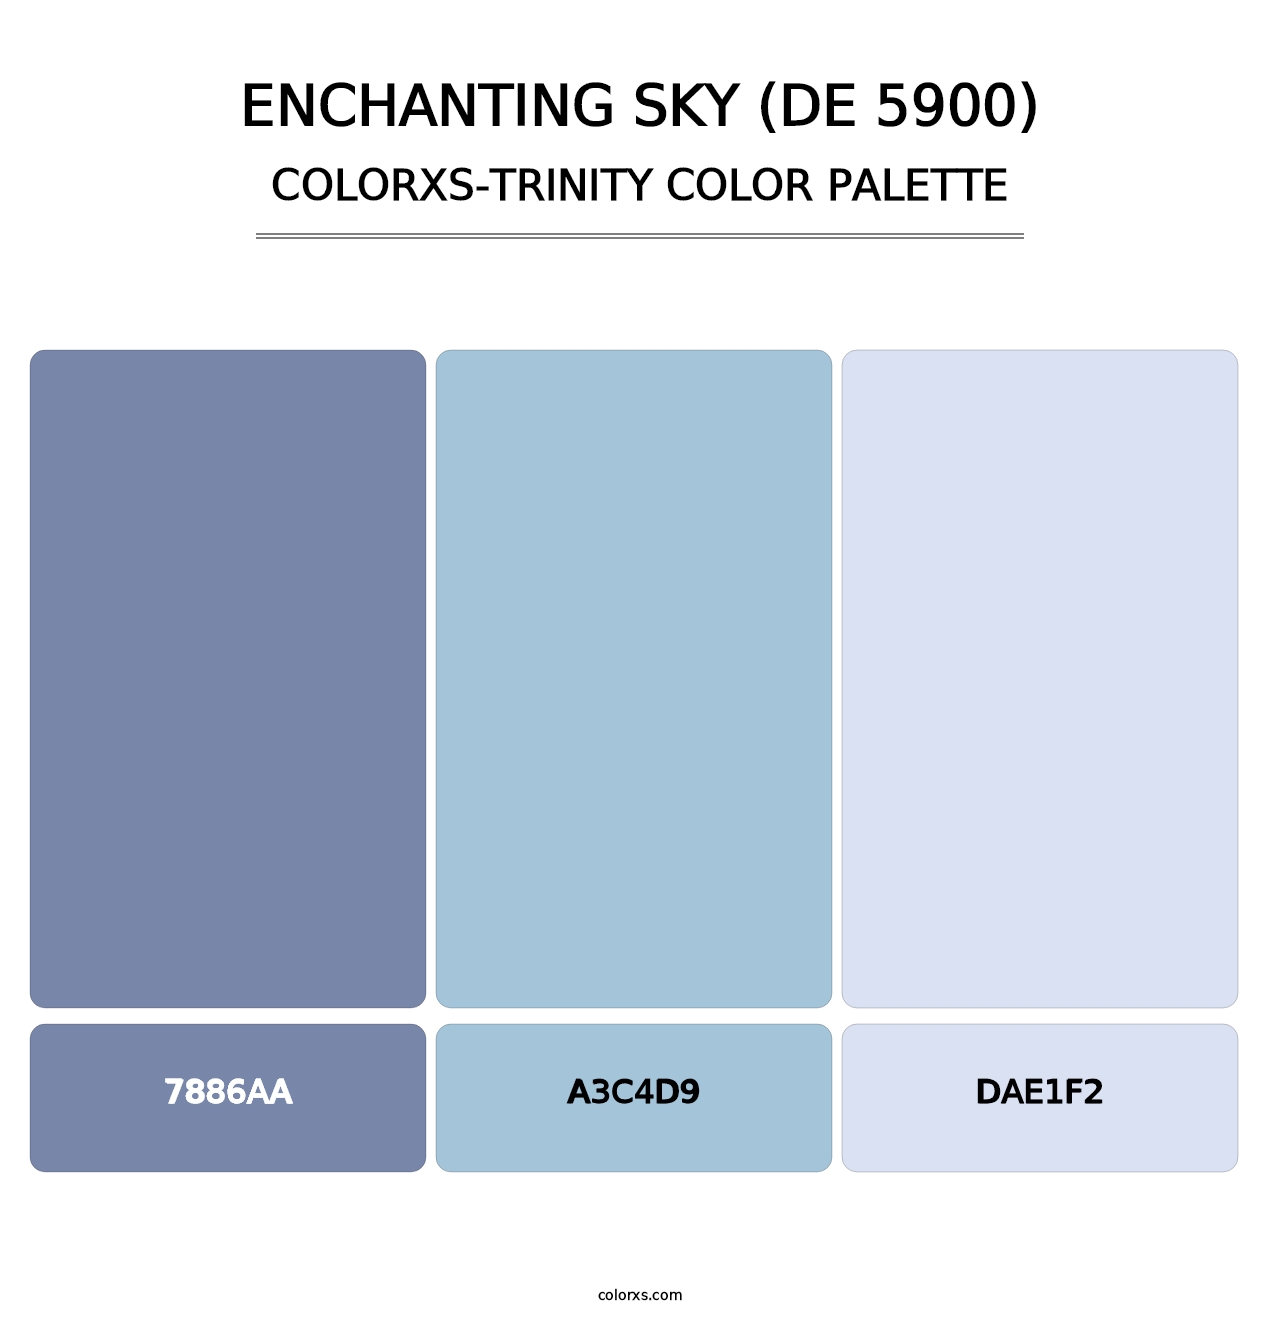 Enchanting Sky (DE 5900) - Colorxs Trinity Palette